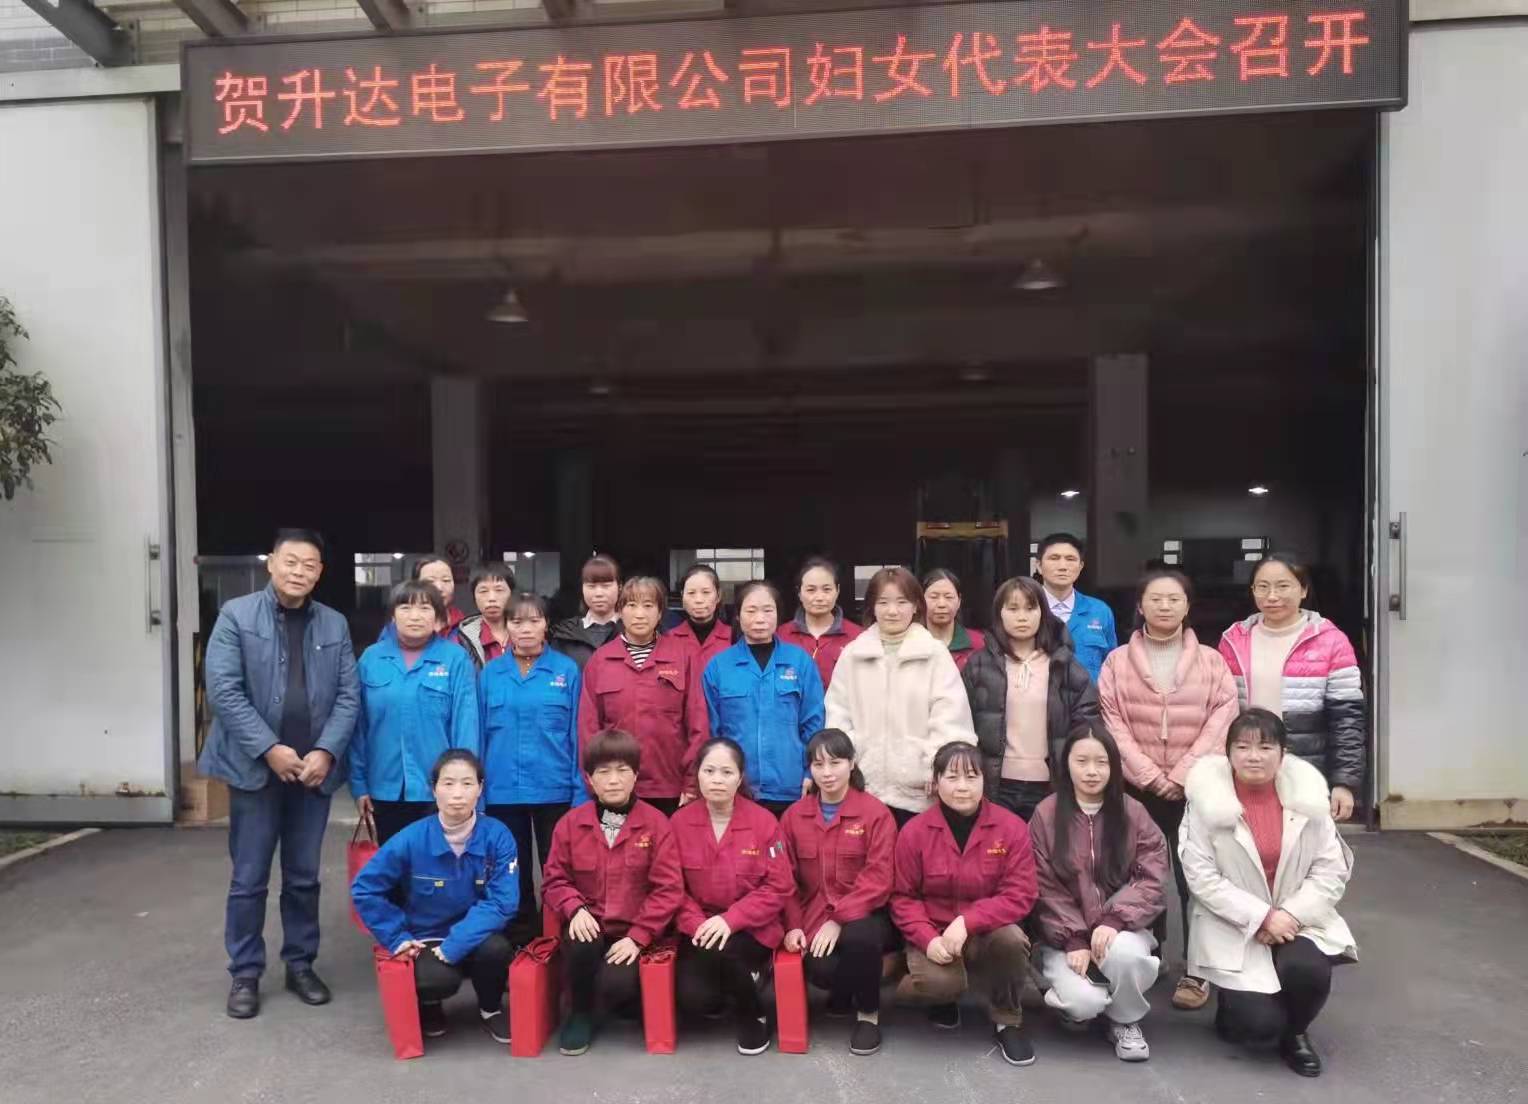 杭州升达电子有限公司妇联正式成立